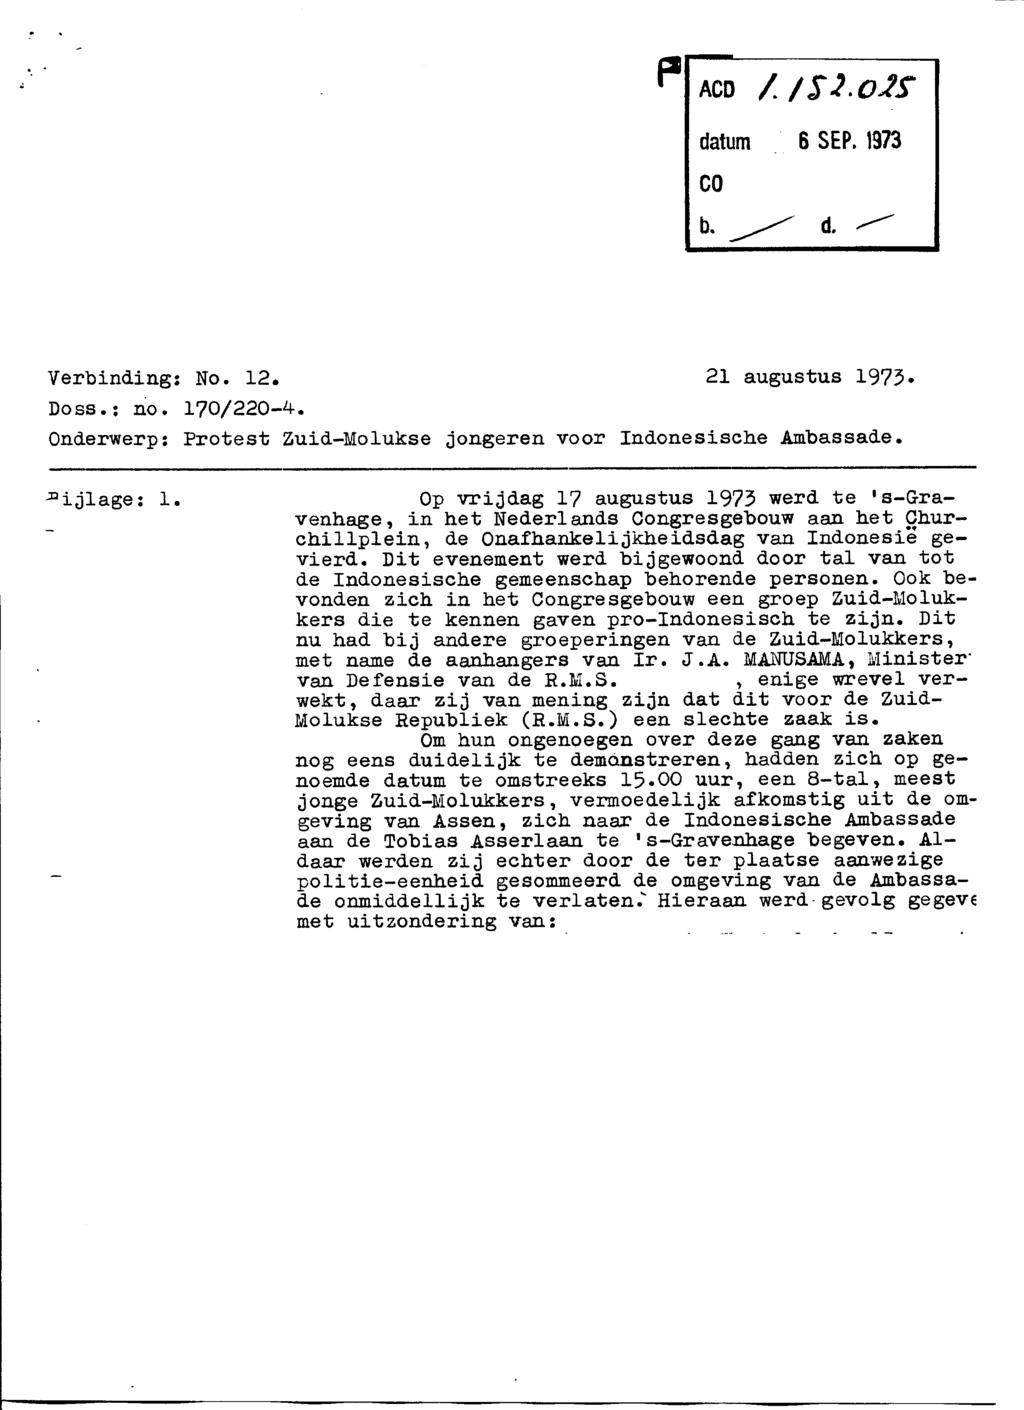 Verbinding: No. 12. 21 augustus 1973. Doss.: no. 170/220-4. Onderwerp: Protest Zuid-Molukse jongeren voor Indonesische Ambassade. 'ijlage: 1.